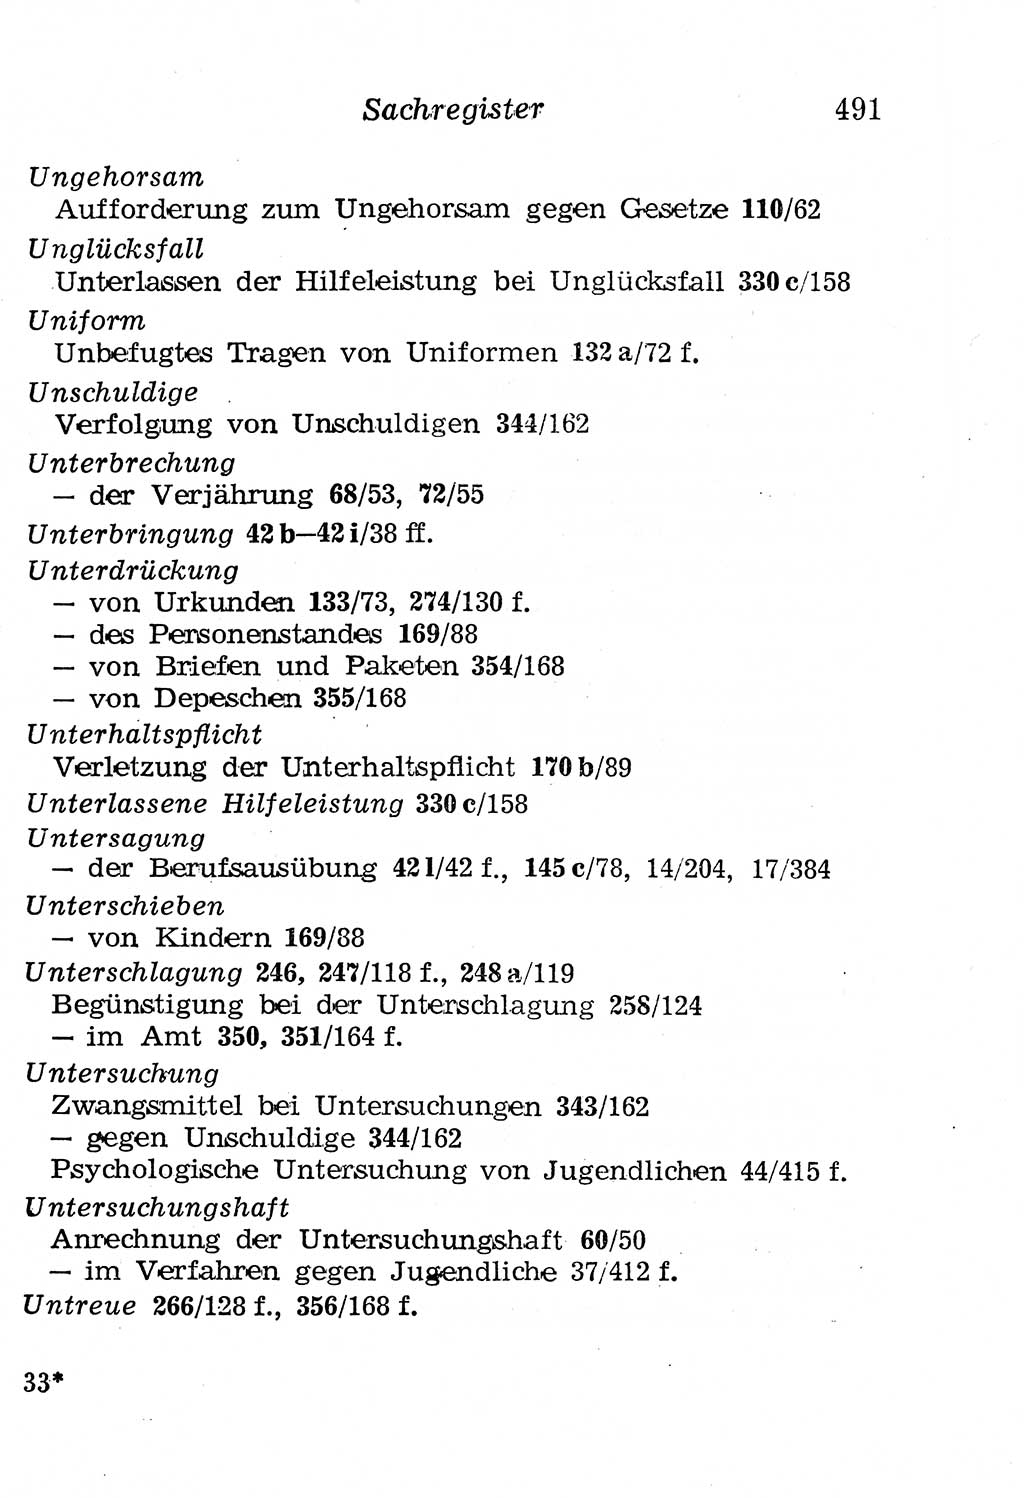 Strafgesetzbuch (StGB) und andere Strafgesetze [Deutsche Demokratische Republik (DDR)] 1958, Seite 491 (StGB Strafges. DDR 1958, S. 491)